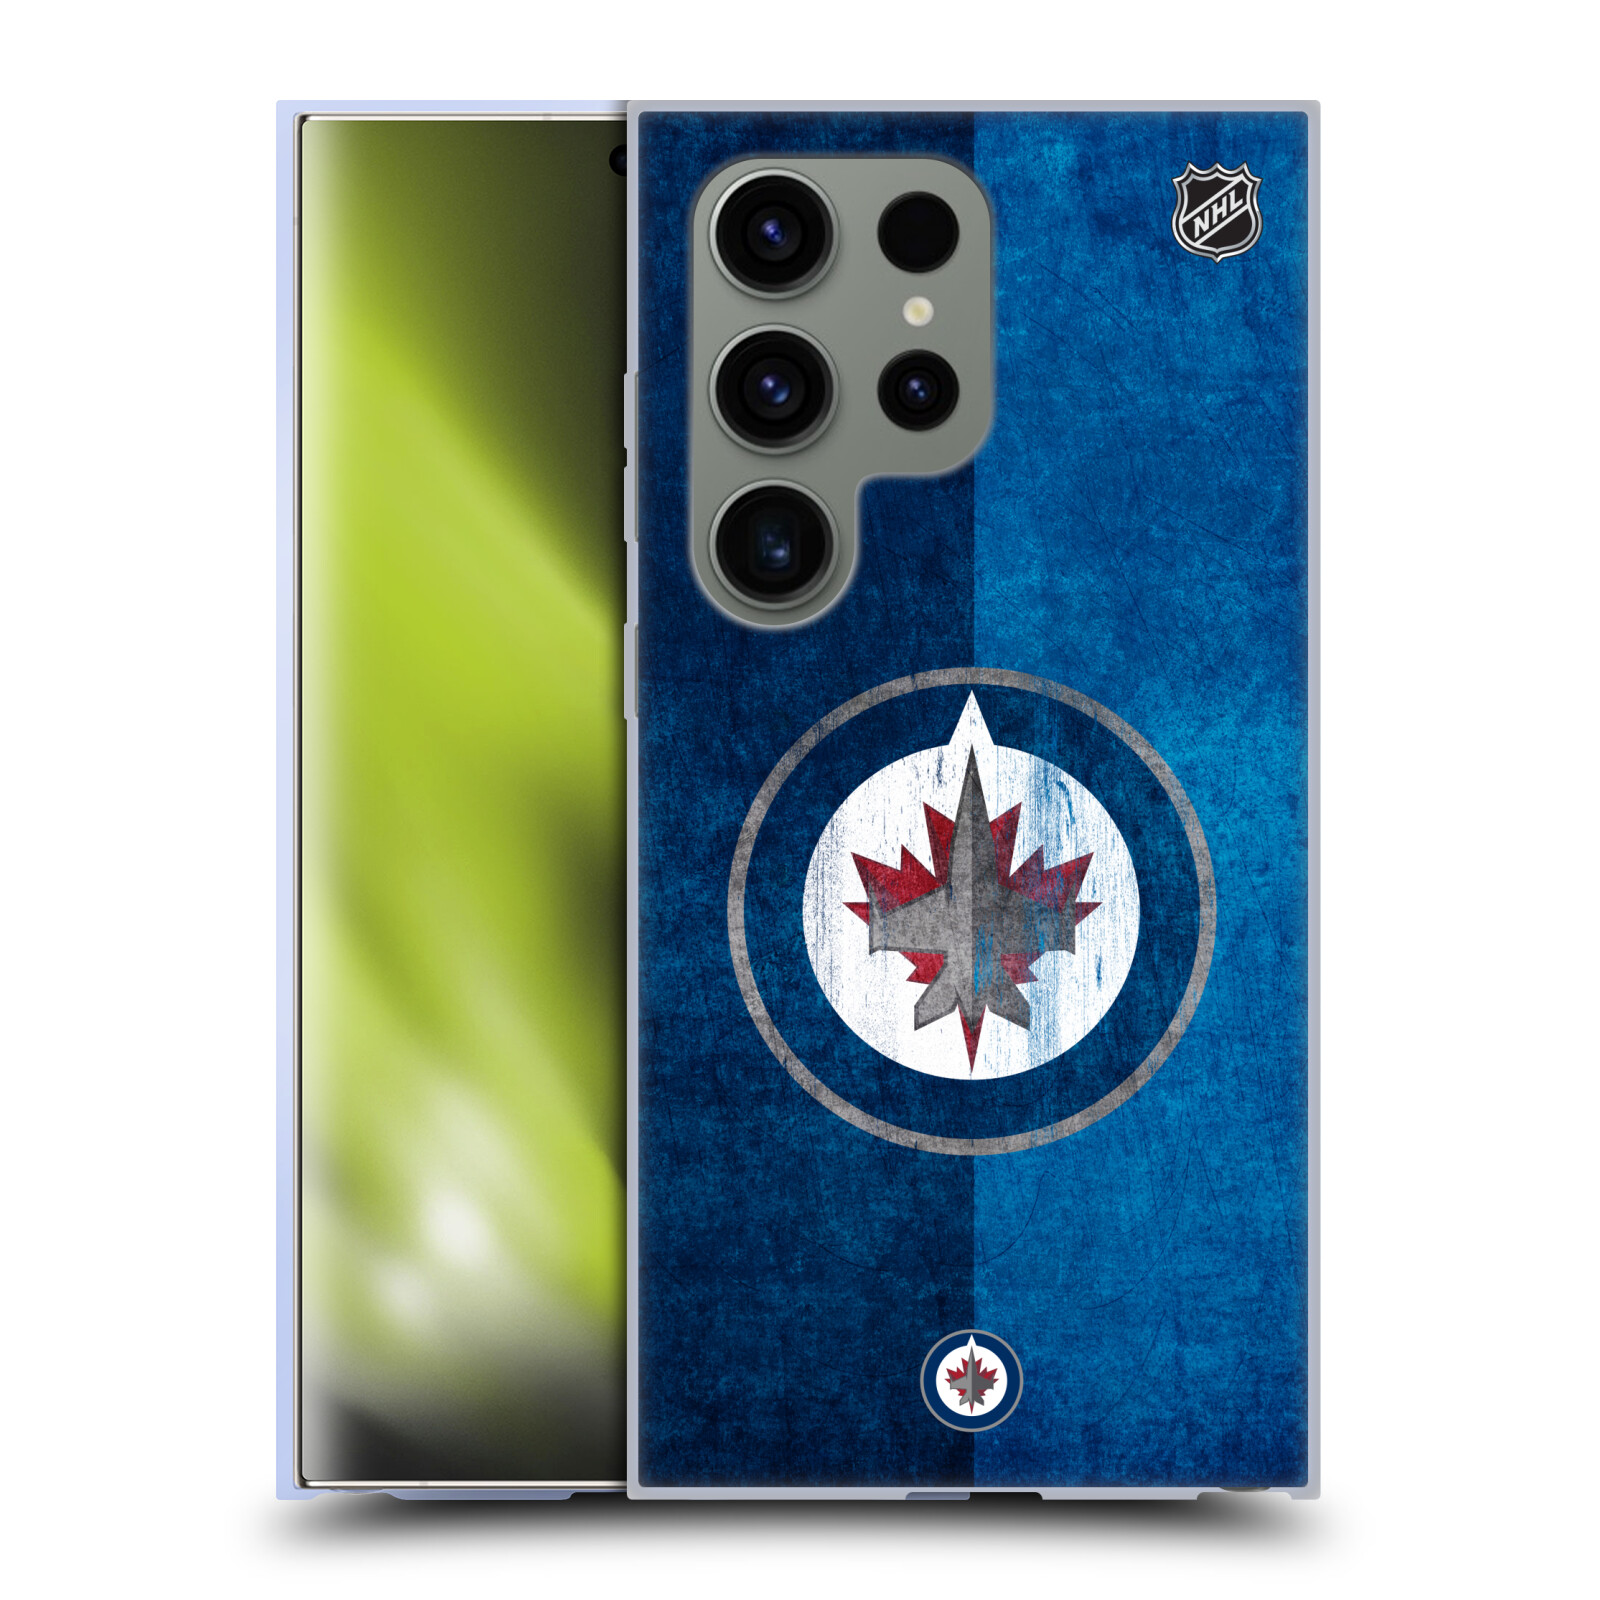 Silikonové lesklé pouzdro na mobil Samsung Galaxy S24 Ultra - NHL - Půlené logo Winnipeg Jets (Silikonový kryt, obal, pouzdro na mobilní telefon Samsung Galaxy S24 Ultra s licencovaným motivem NHL - Půlené logo Winnipeg Jets)